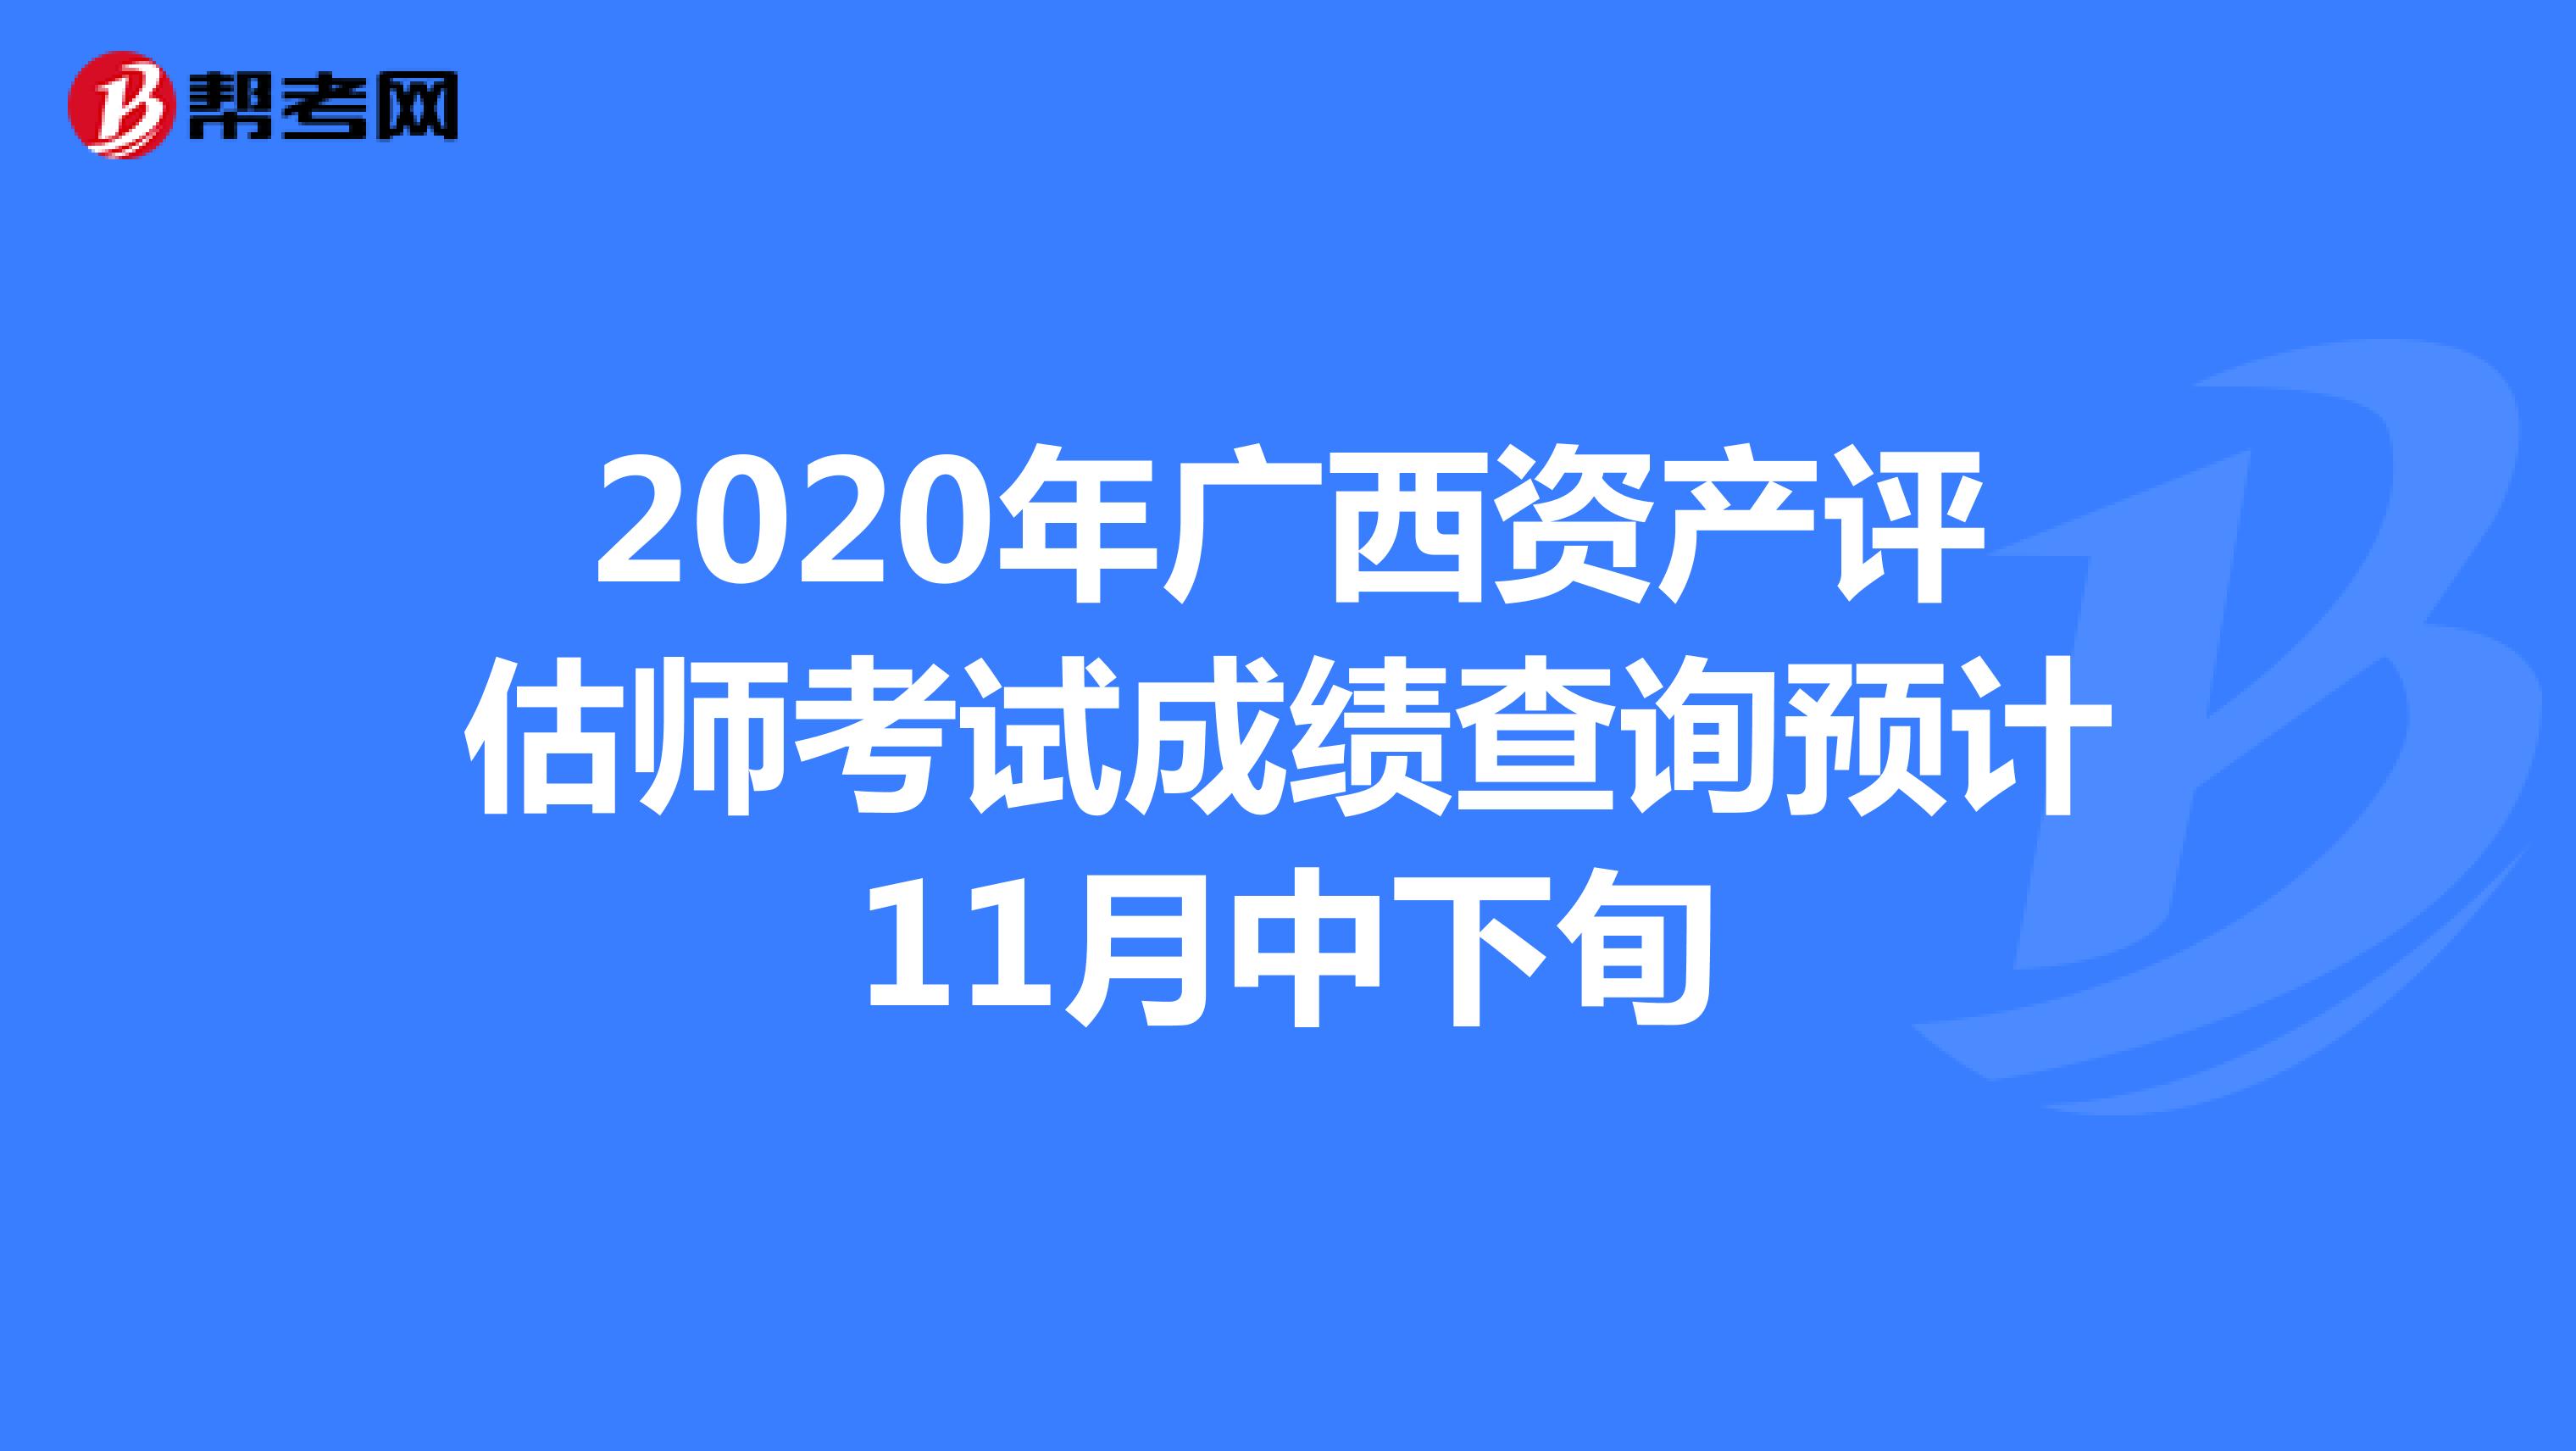 2020年广西资产评估师考试成绩查询预计11月中下旬